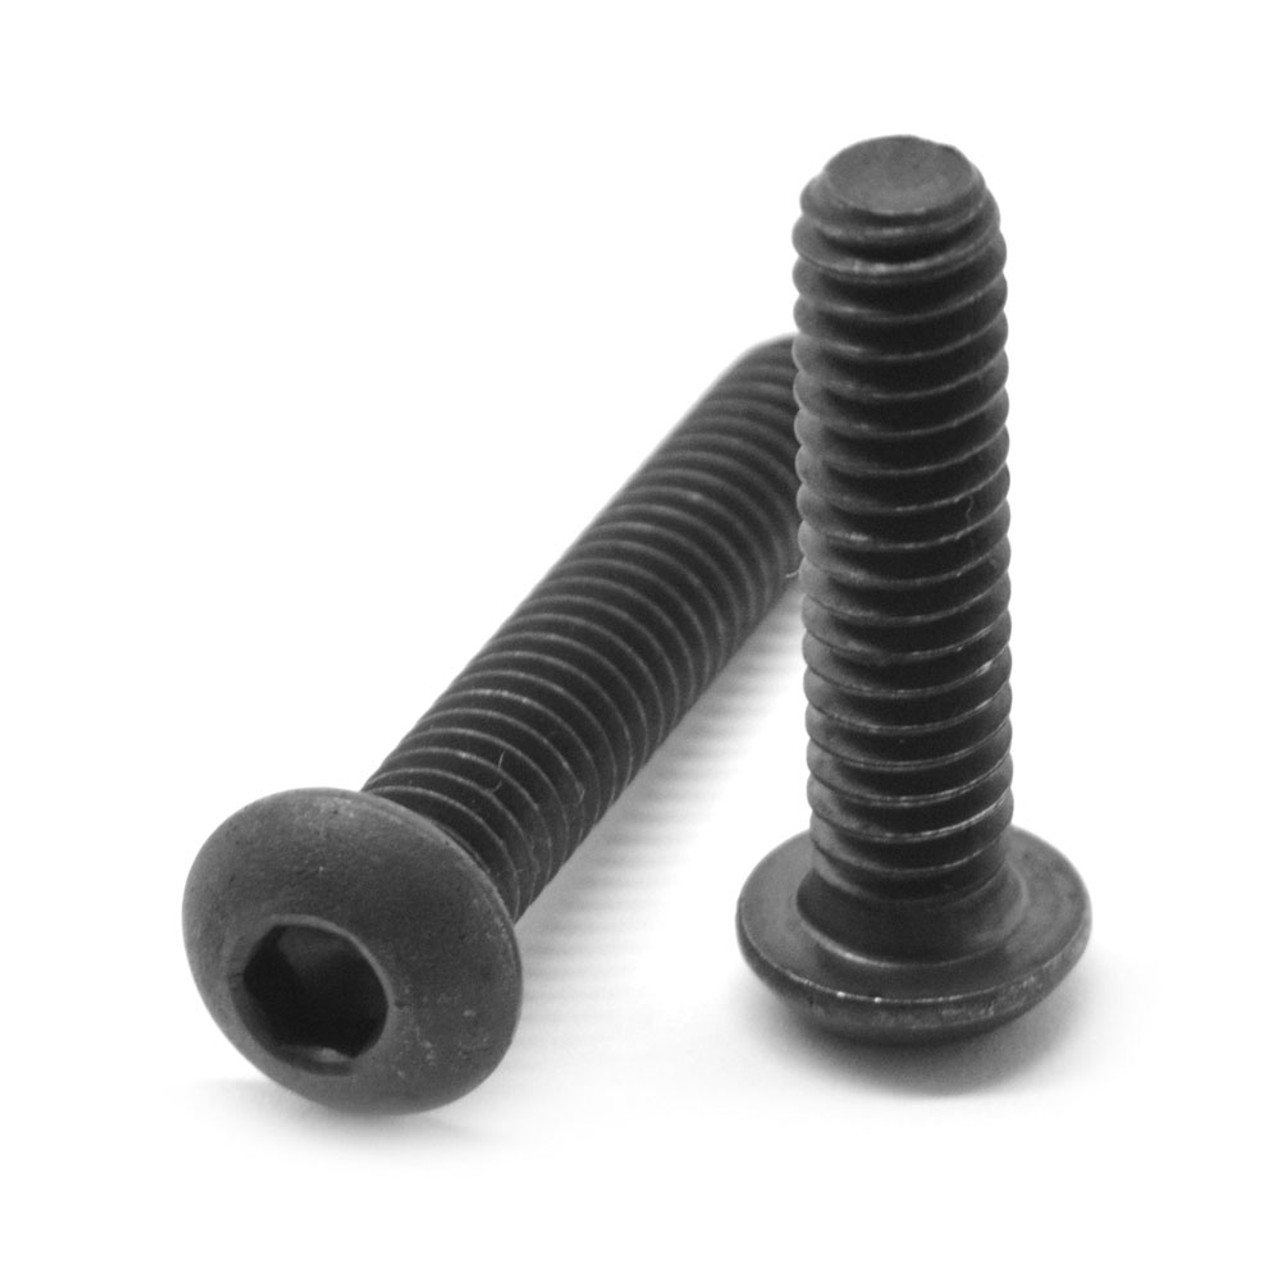 5/8"-11 x 2 1/2" (FT) Coarse Thread Socket Button Head Cap Screw Alloy Steel Black Oxide